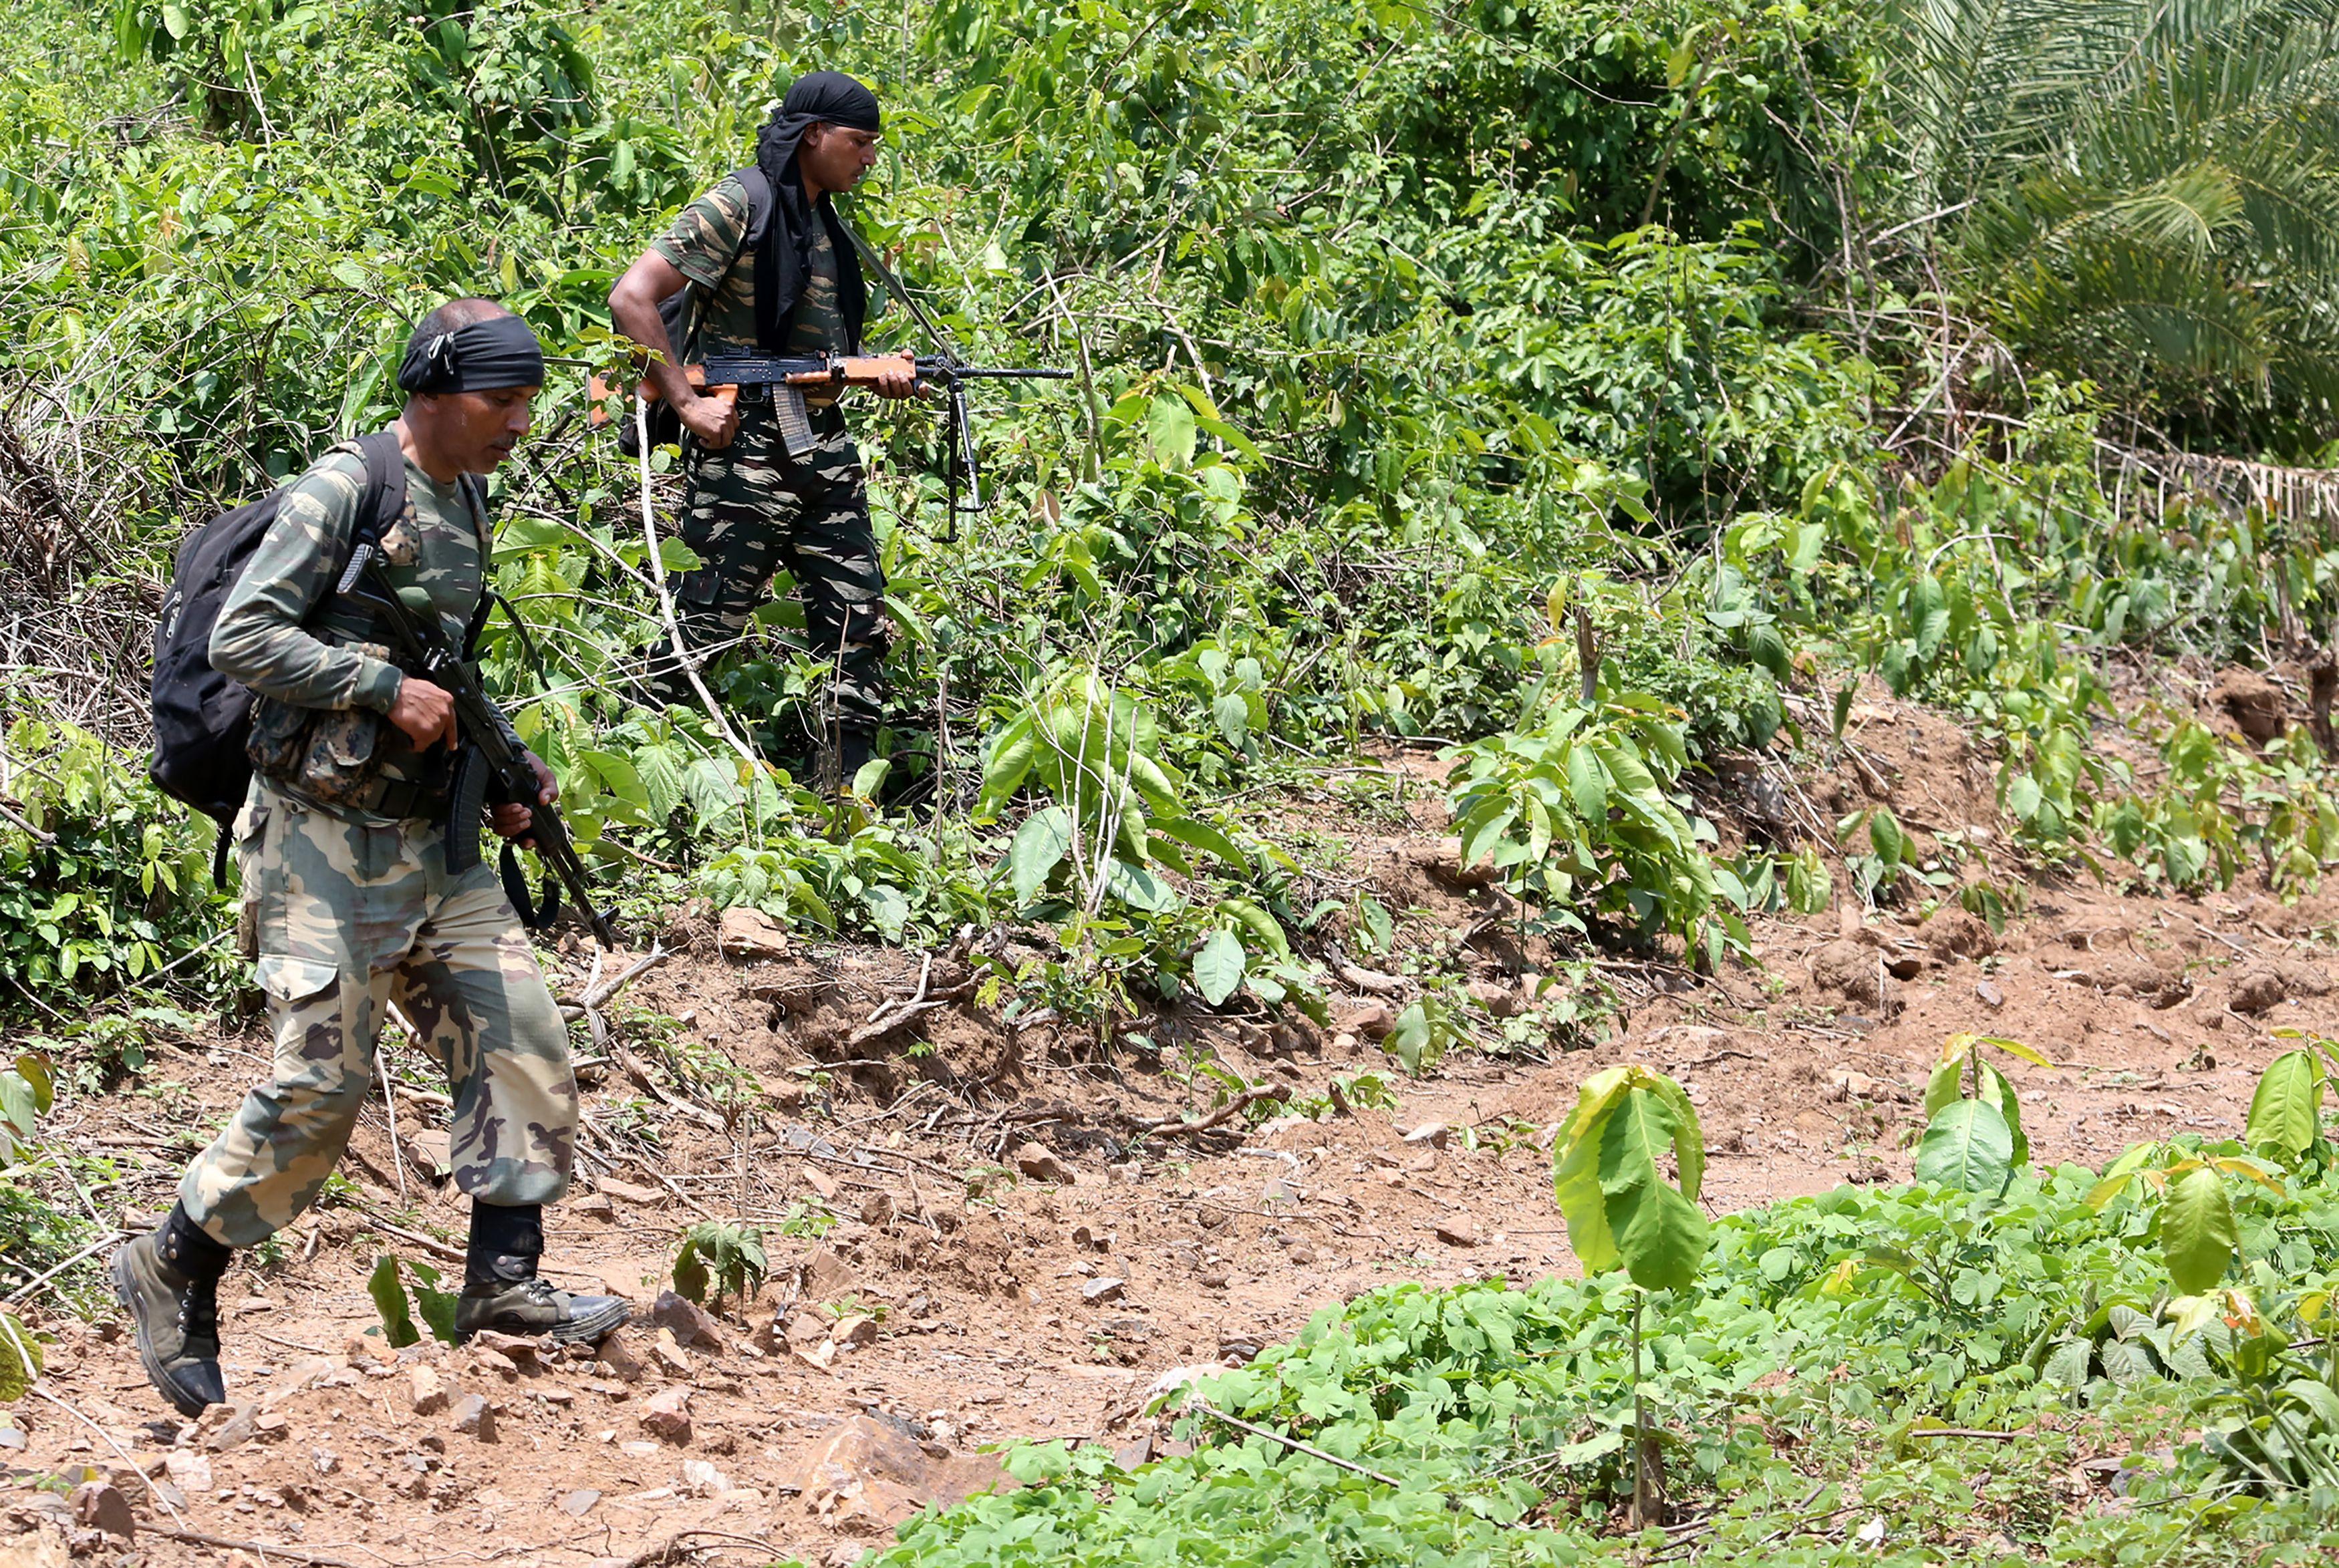 På bilden som är tagen den 9 maj 2018 ses indisk militärpersonal patrullera i området Saranda i samband med insatser mot maoistrebeller i delstaten Jharkhand i östra Indien. Foto: Sanjib Dutta/AFP via Getty Images